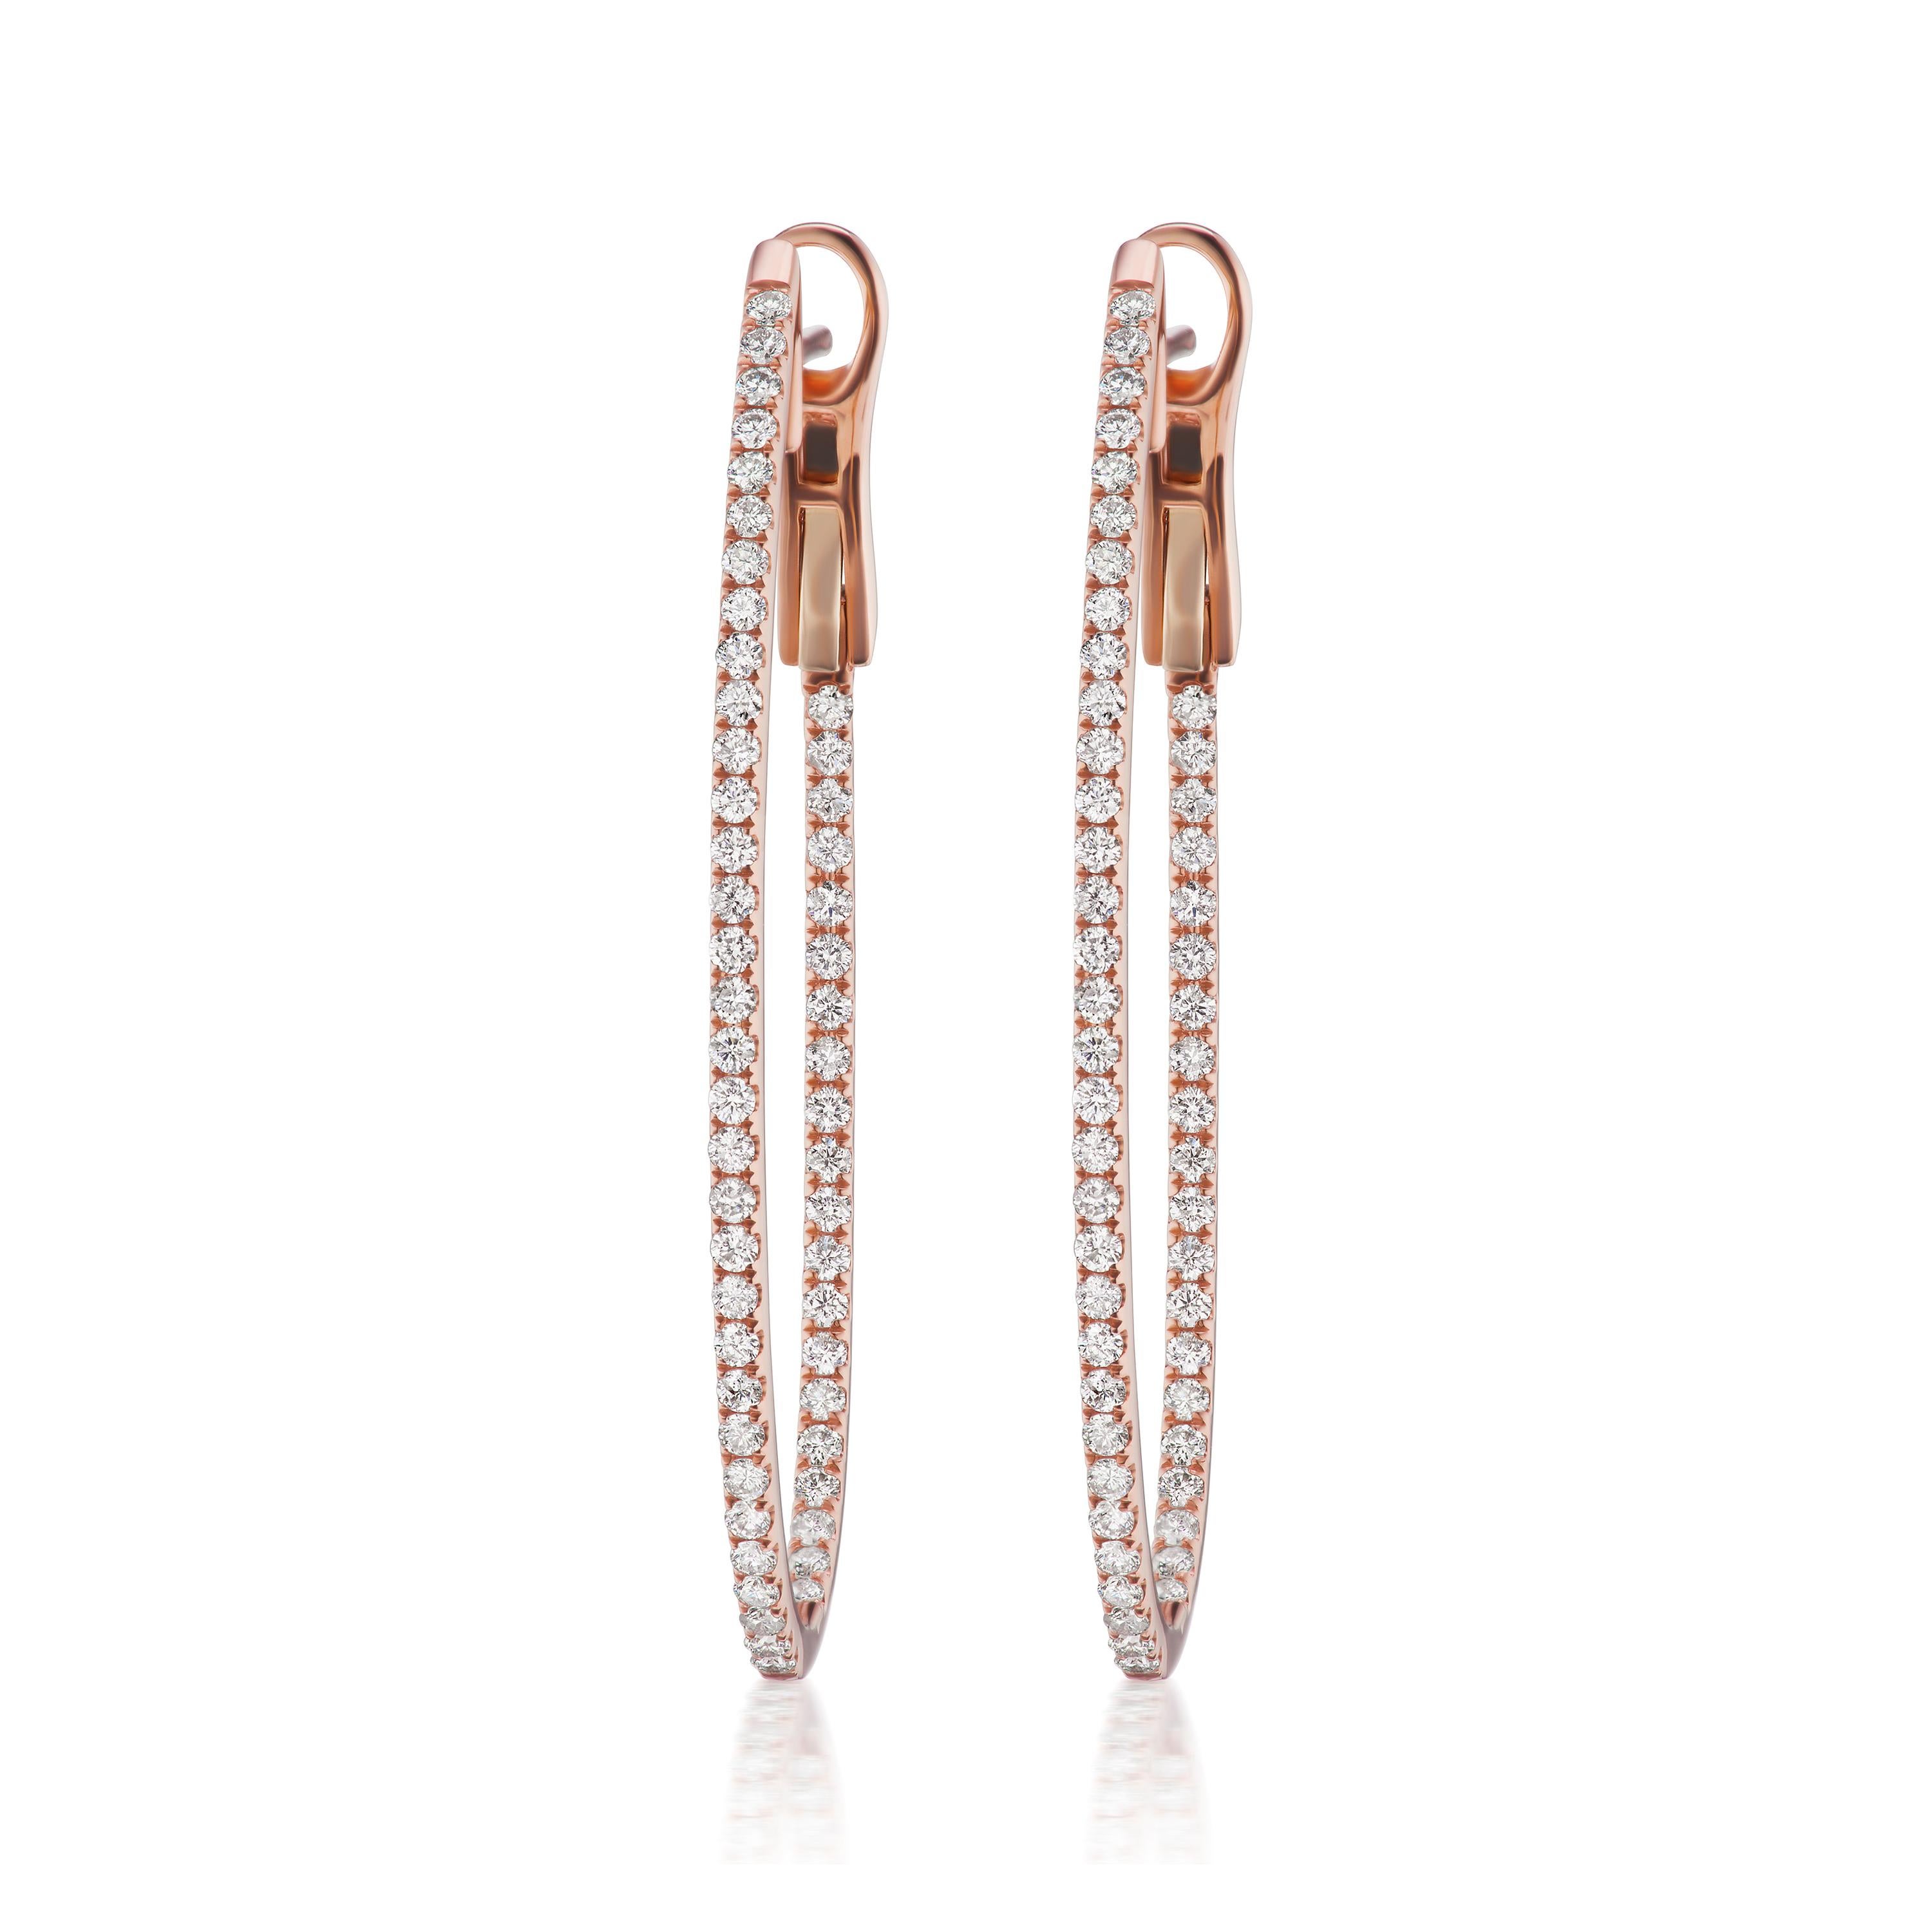 Luxle présente une éblouissante paire d'anneaux en or rose ornés de 104 diamants ronds pavés à l'intérieur et à l'extérieur, totalisant 1,05 carats, encadrés par un sertissage pavé. Ces anneaux sont dotés d'un dos en oméga.

Suivez la vitrine de